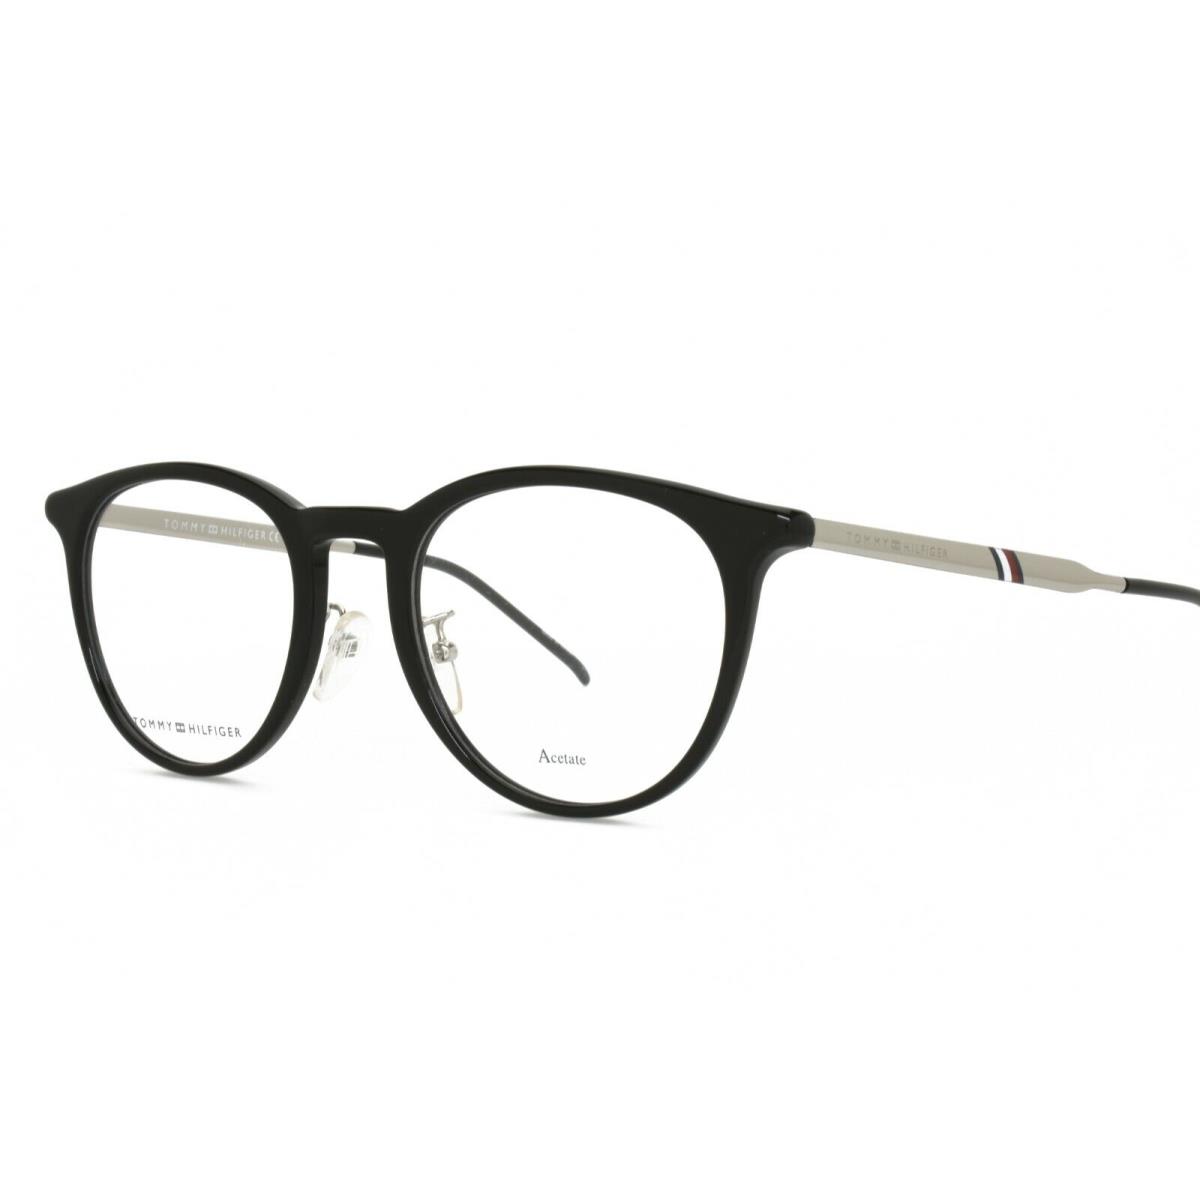 Tommy Hilfiger Eyeglasses 1624 807 50-21-145 Black